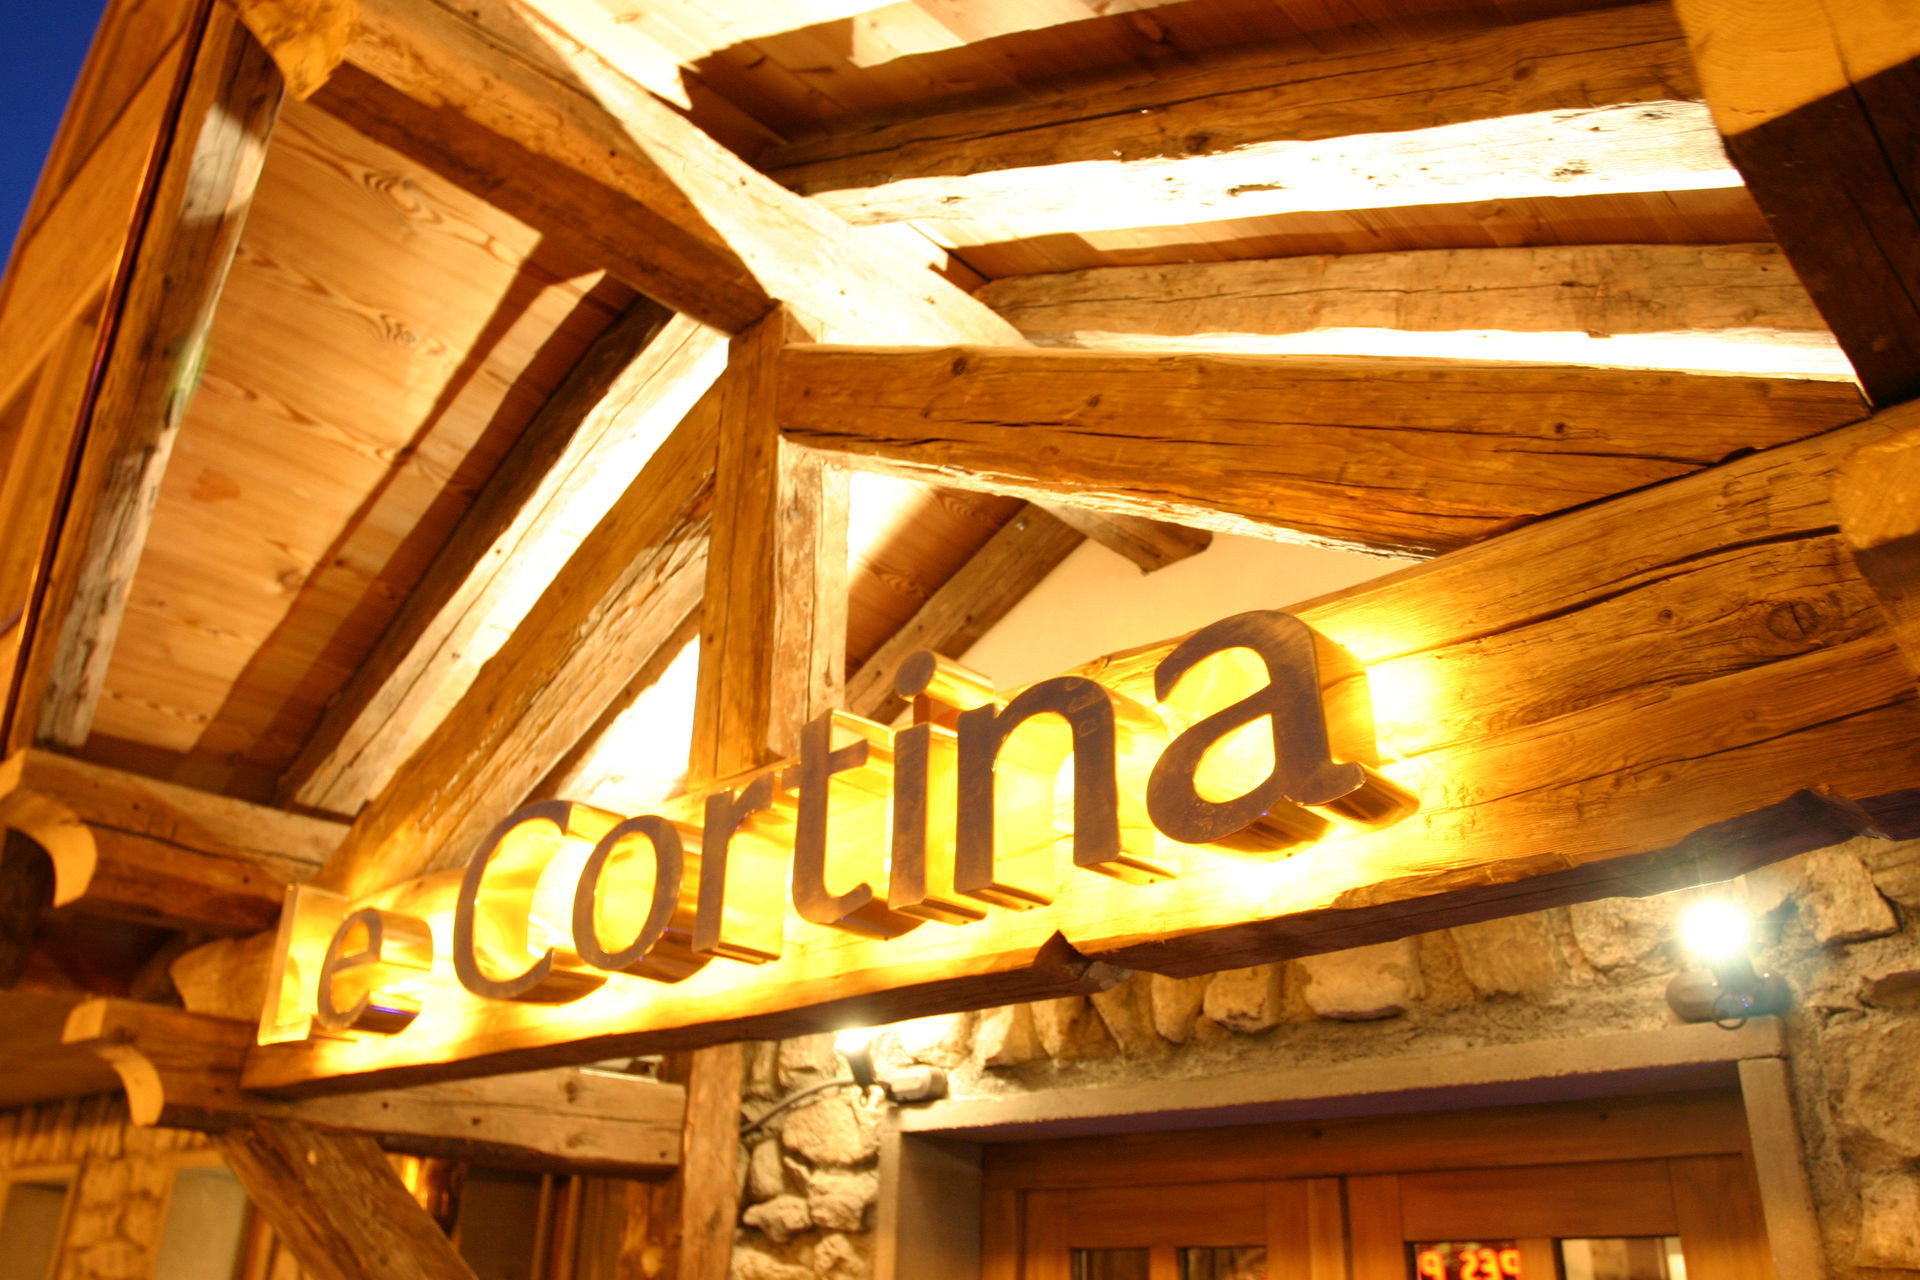 Appartement Cortina - 21 - Appt belle vue - 8 pers - Les Deux Alpes Venosc